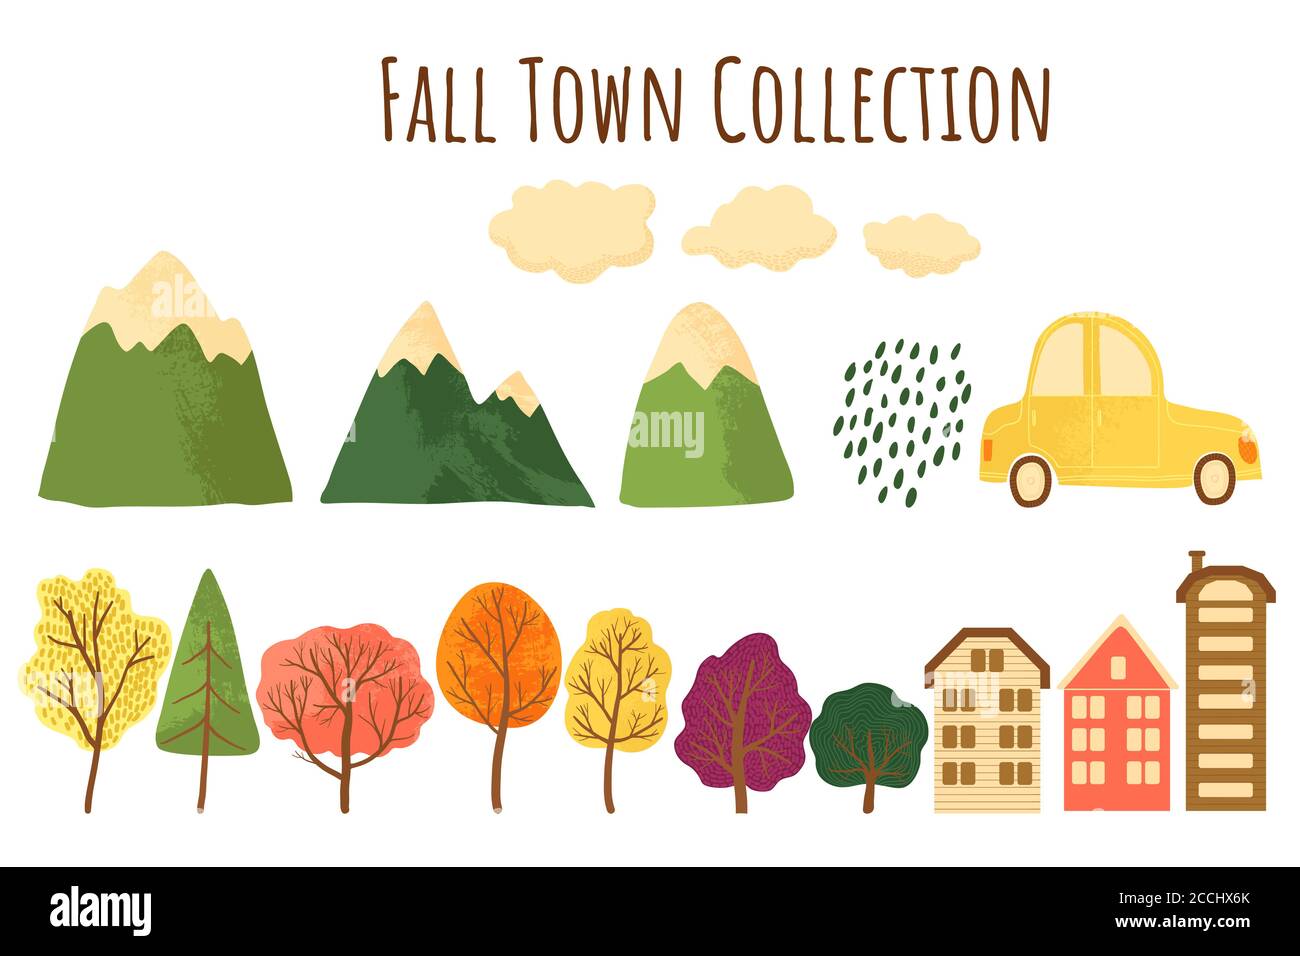 Herbstkollektion mit Bäumen, Bergen, Häusern, Autos und Wolken Ikonen. Konstruktor Set für bunte fällt Landschaft Konzept in Cartoons flachen Stil. Ve Stock Vektor